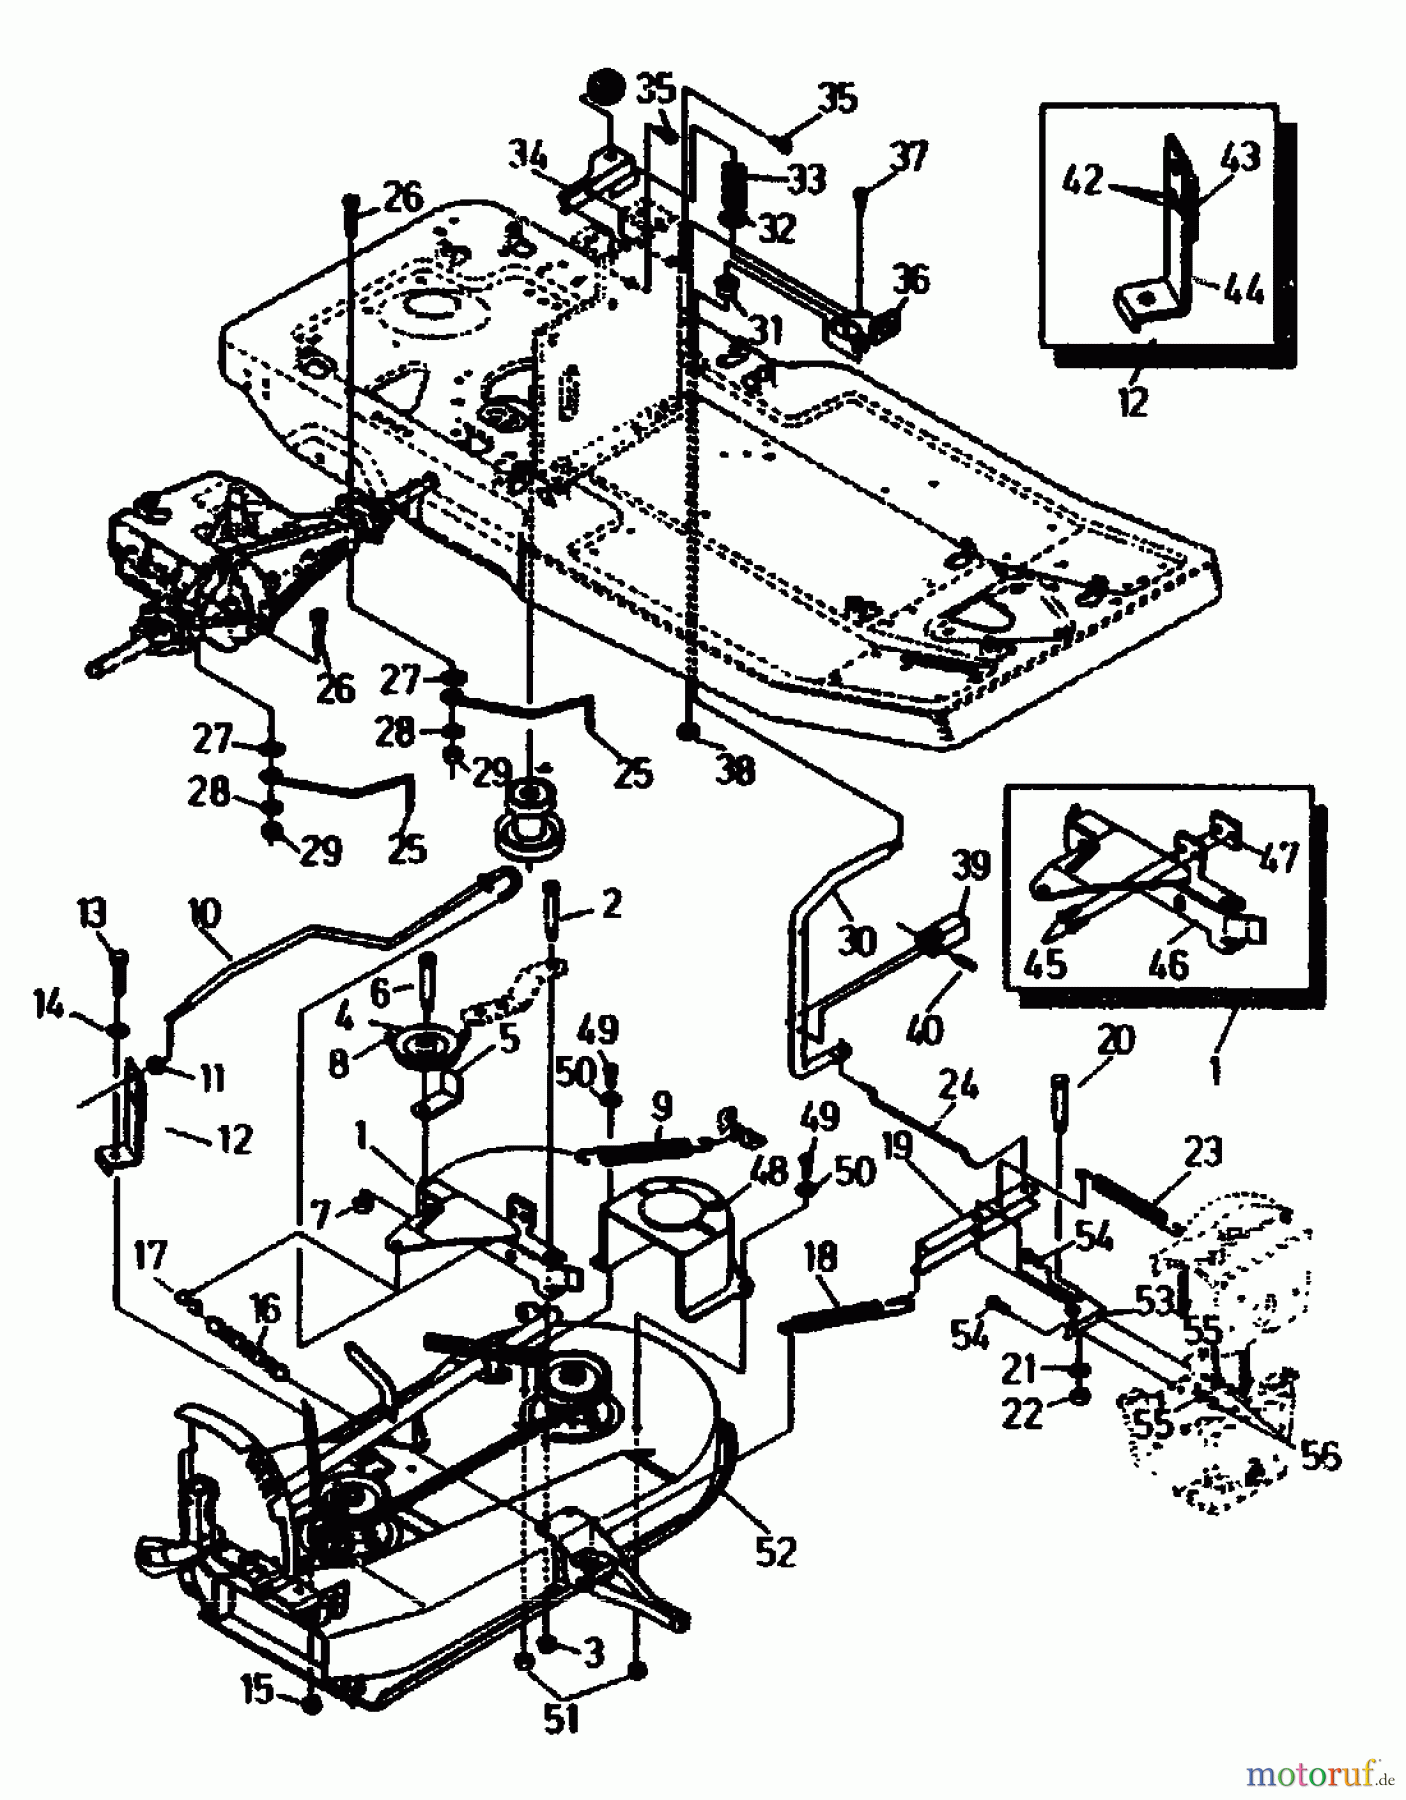  Gutbrod Tracteurs de pelouse ASB 90-10 04015.01  (1991) Relevage plateau de coupe